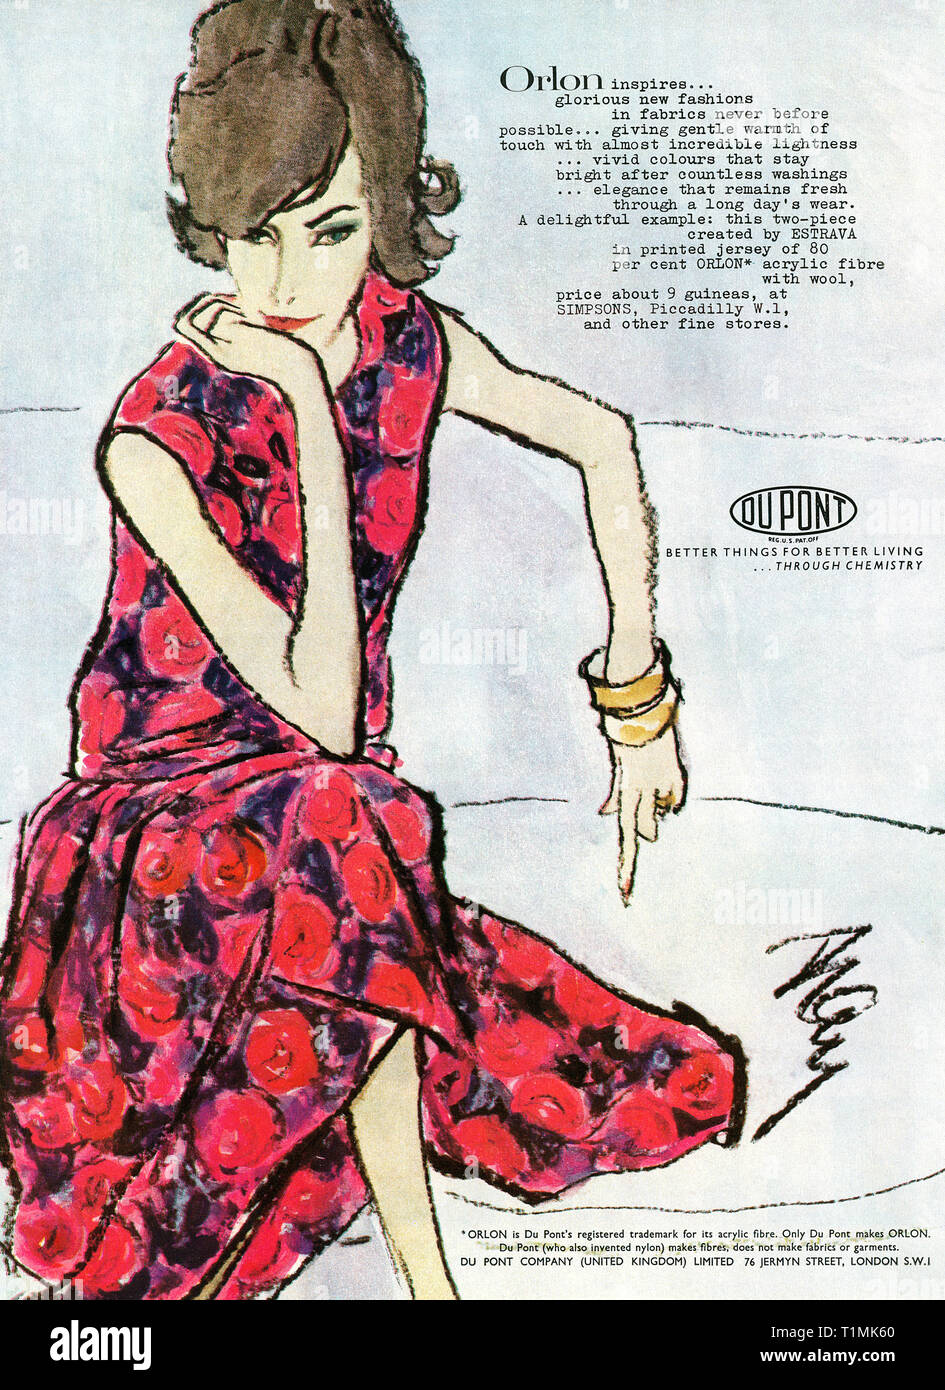 1962 britischen Werbung für Orlon Mode Stoff von Du Pont Stockfotografie -  Alamy